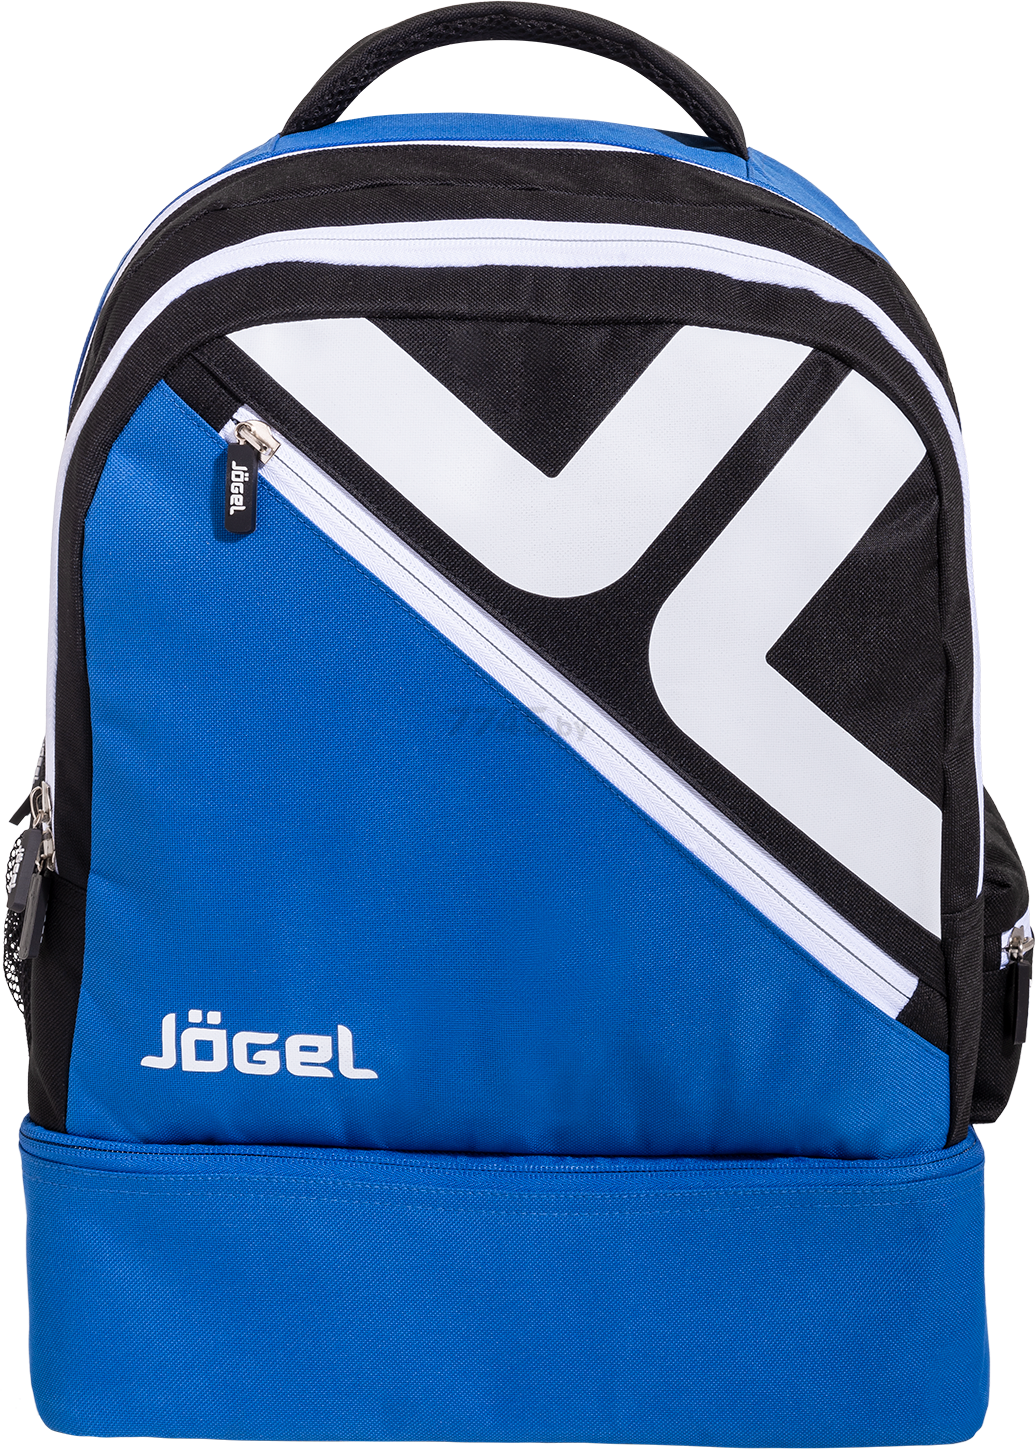 Рюкзак спортивный JOGEL 36 л синий/черный/белый (JBP-1903-761)